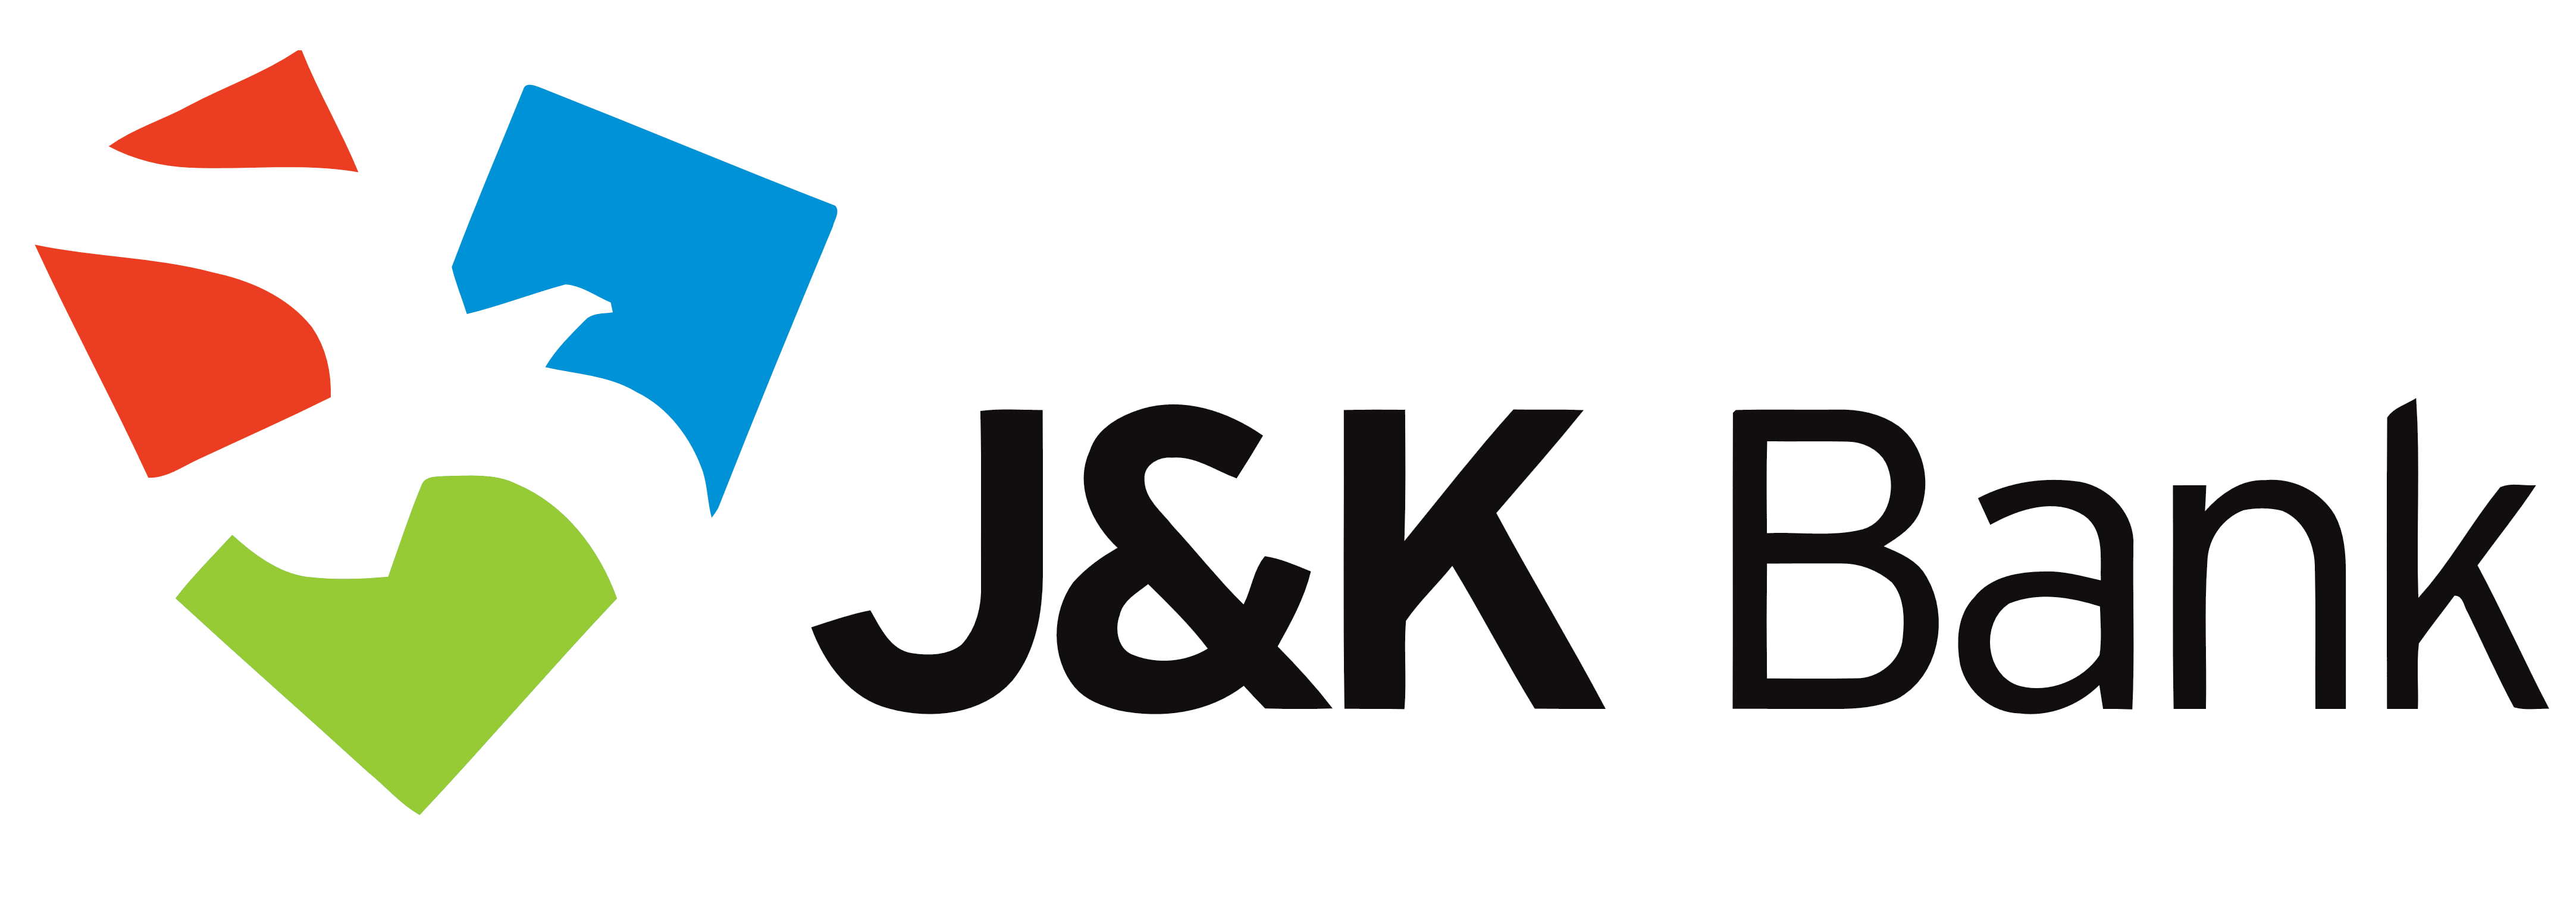 JK Bank logo, logotype